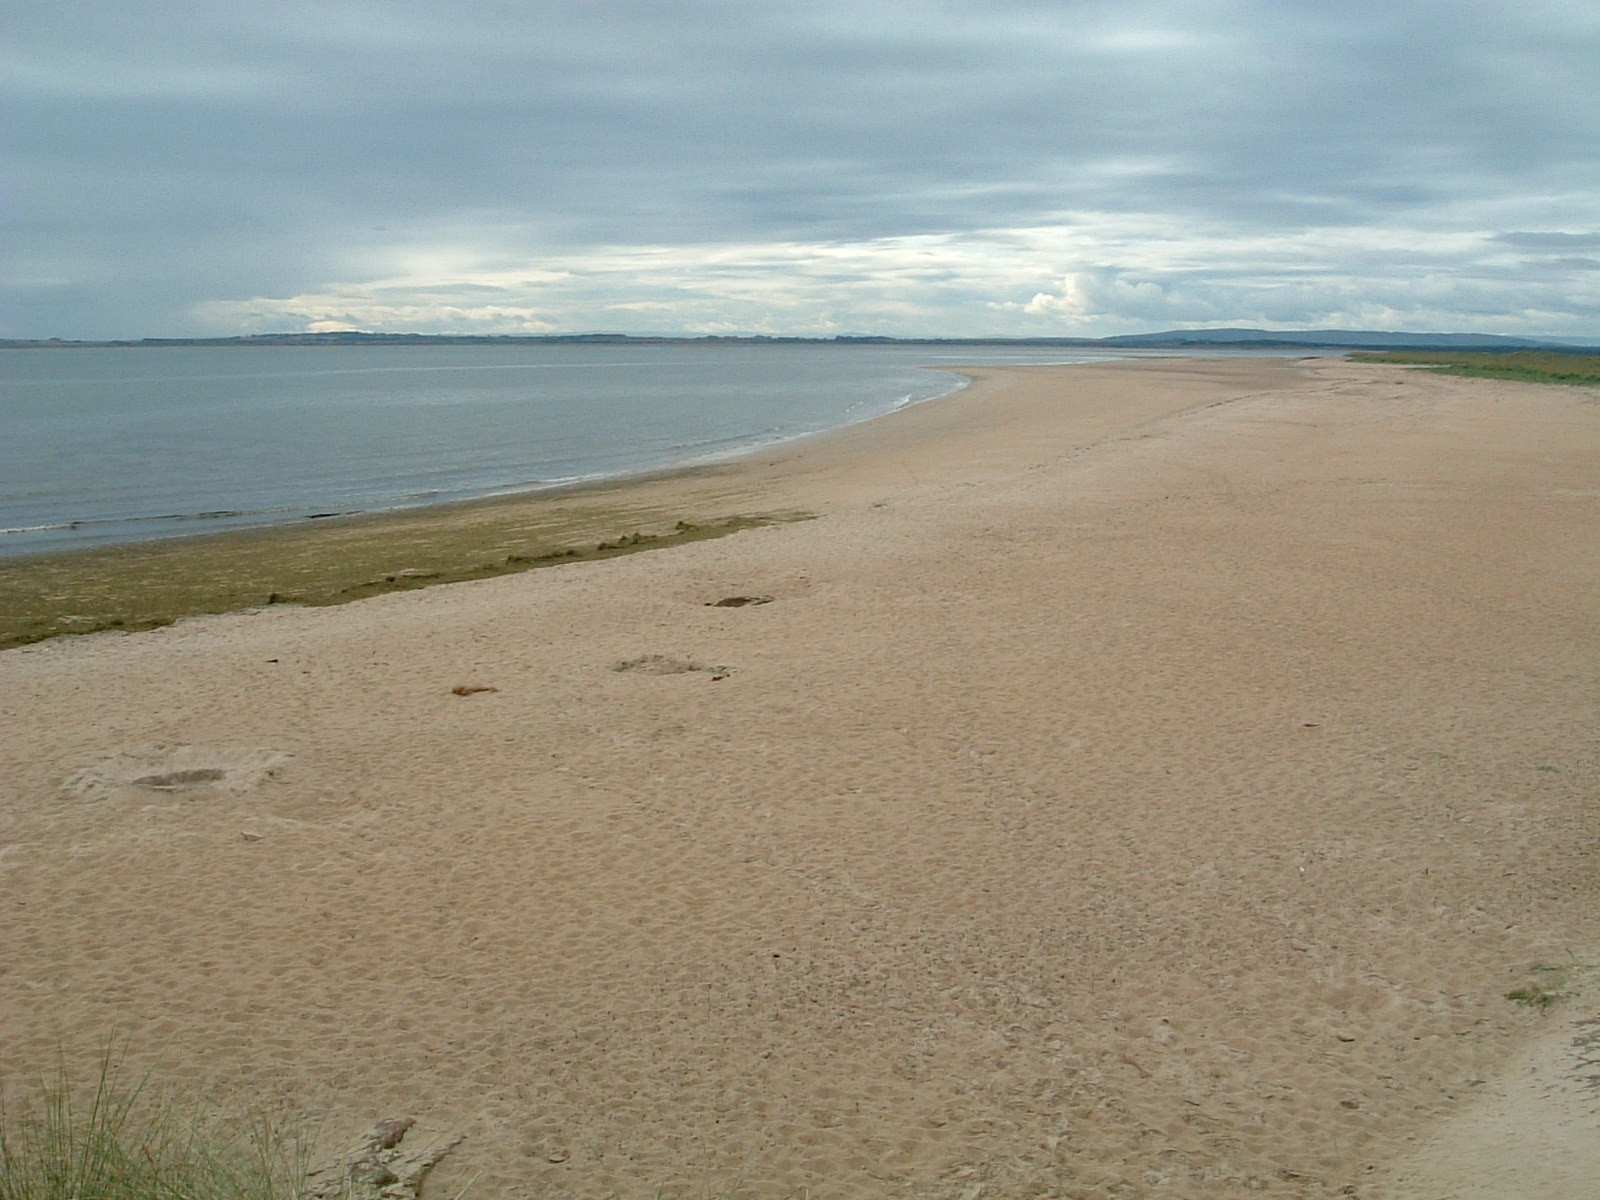 The beach north of Dornoch